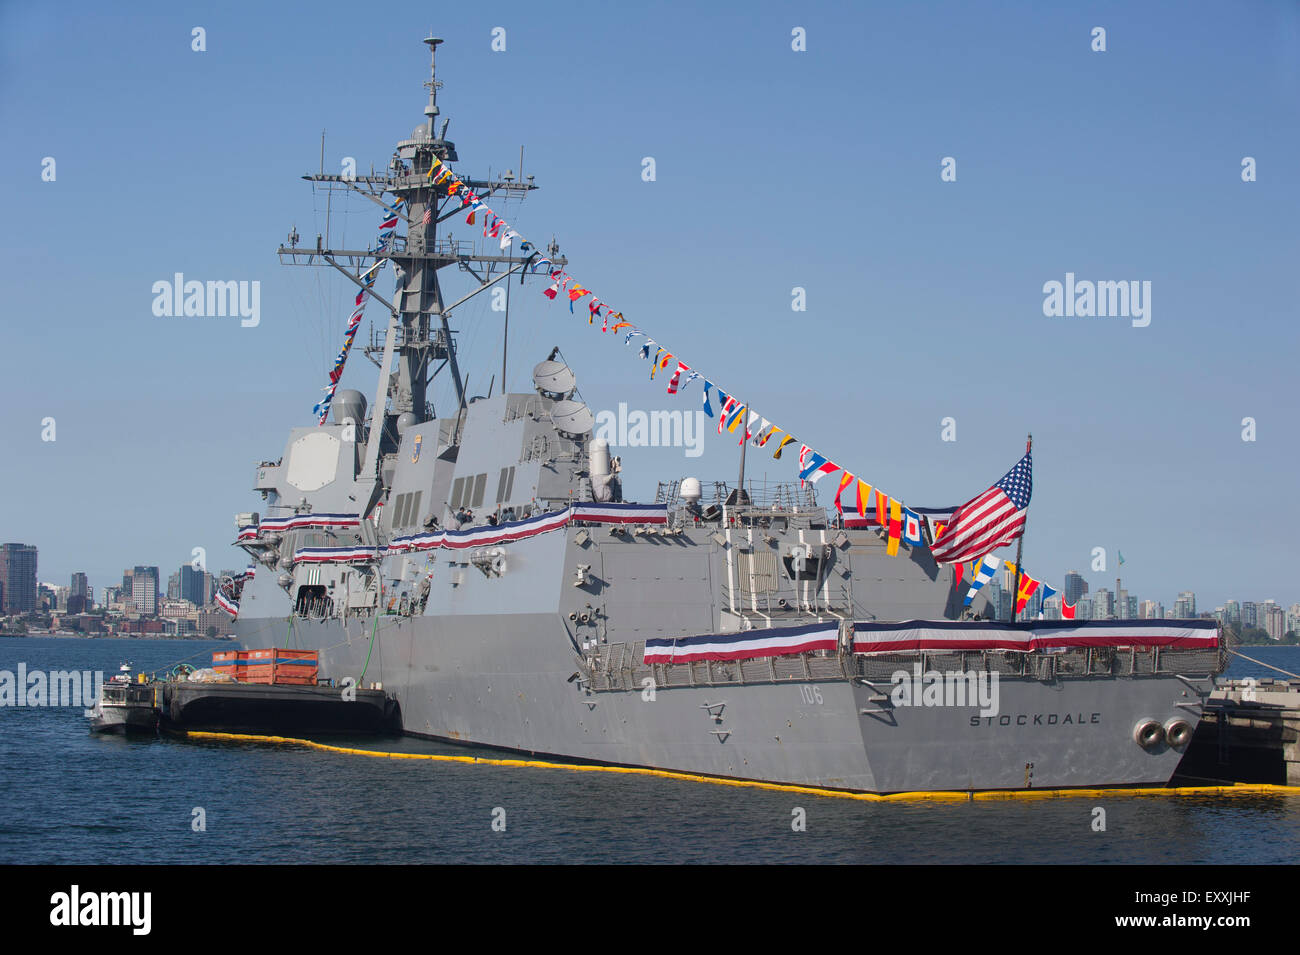 États-unis la classe Arleigh Burke, destroyer lance-missiles USS Stockdale (DDG-106) amarré dans le port de Vancouver Banque D'Images